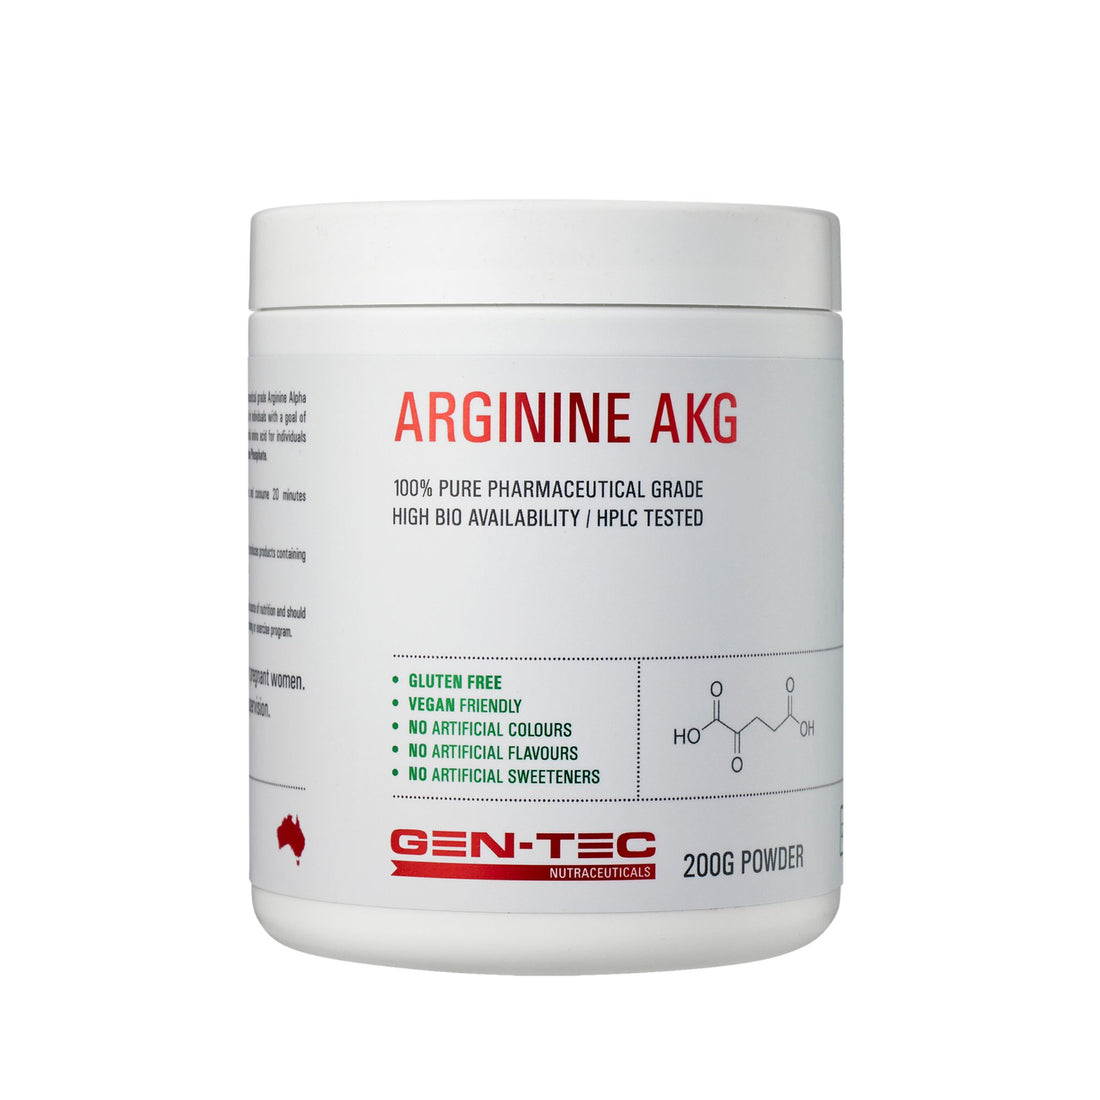 Gentec Arginine AKG Nutraceuticals